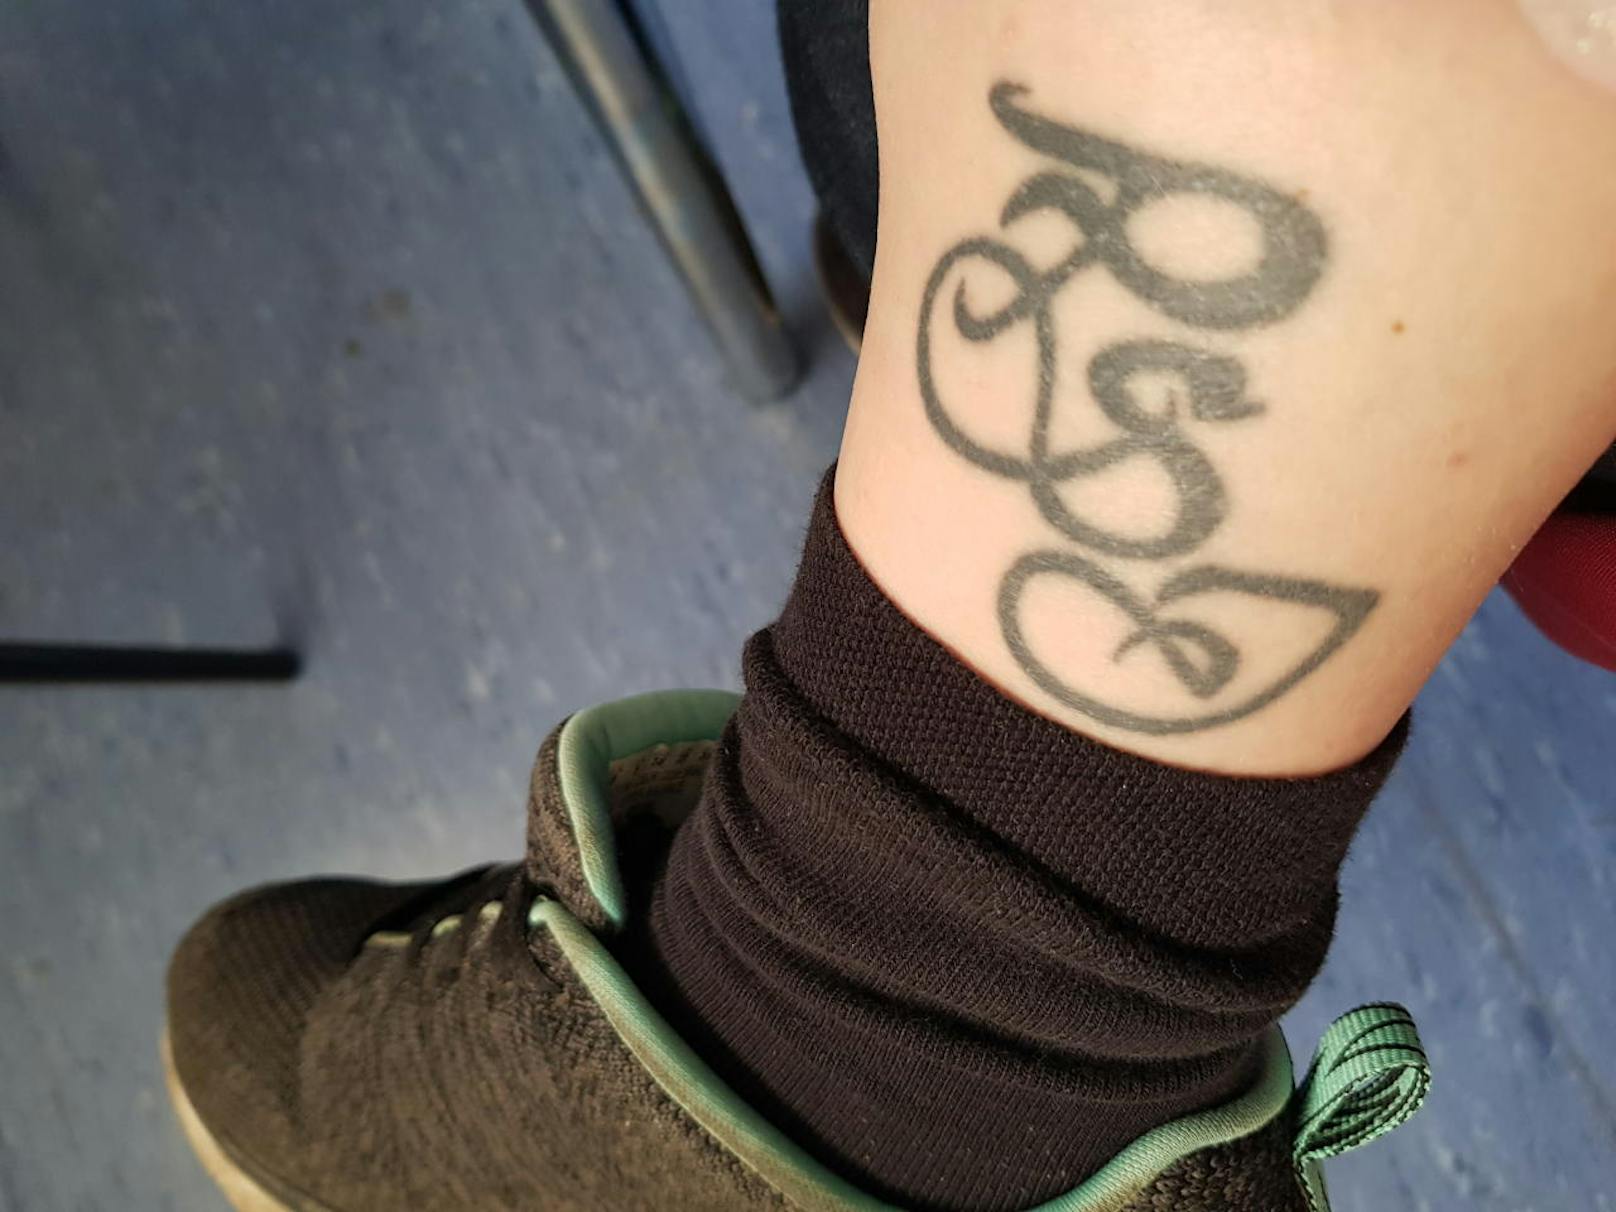 Steffy (28): "Habe ein Tattoo über dem Knöchel innen, es sind drei Buchstaben. War jung und dumm habe meinen Ex-Freund dort "verewigt" und das führt nun mit meinem jetzigen Freund hin und wieder zu Diskussionen. Würde mich freuen ein Cover-up zu bekommen, dass die unnötigen Diskussion und die Jugendsünde weg kommt."